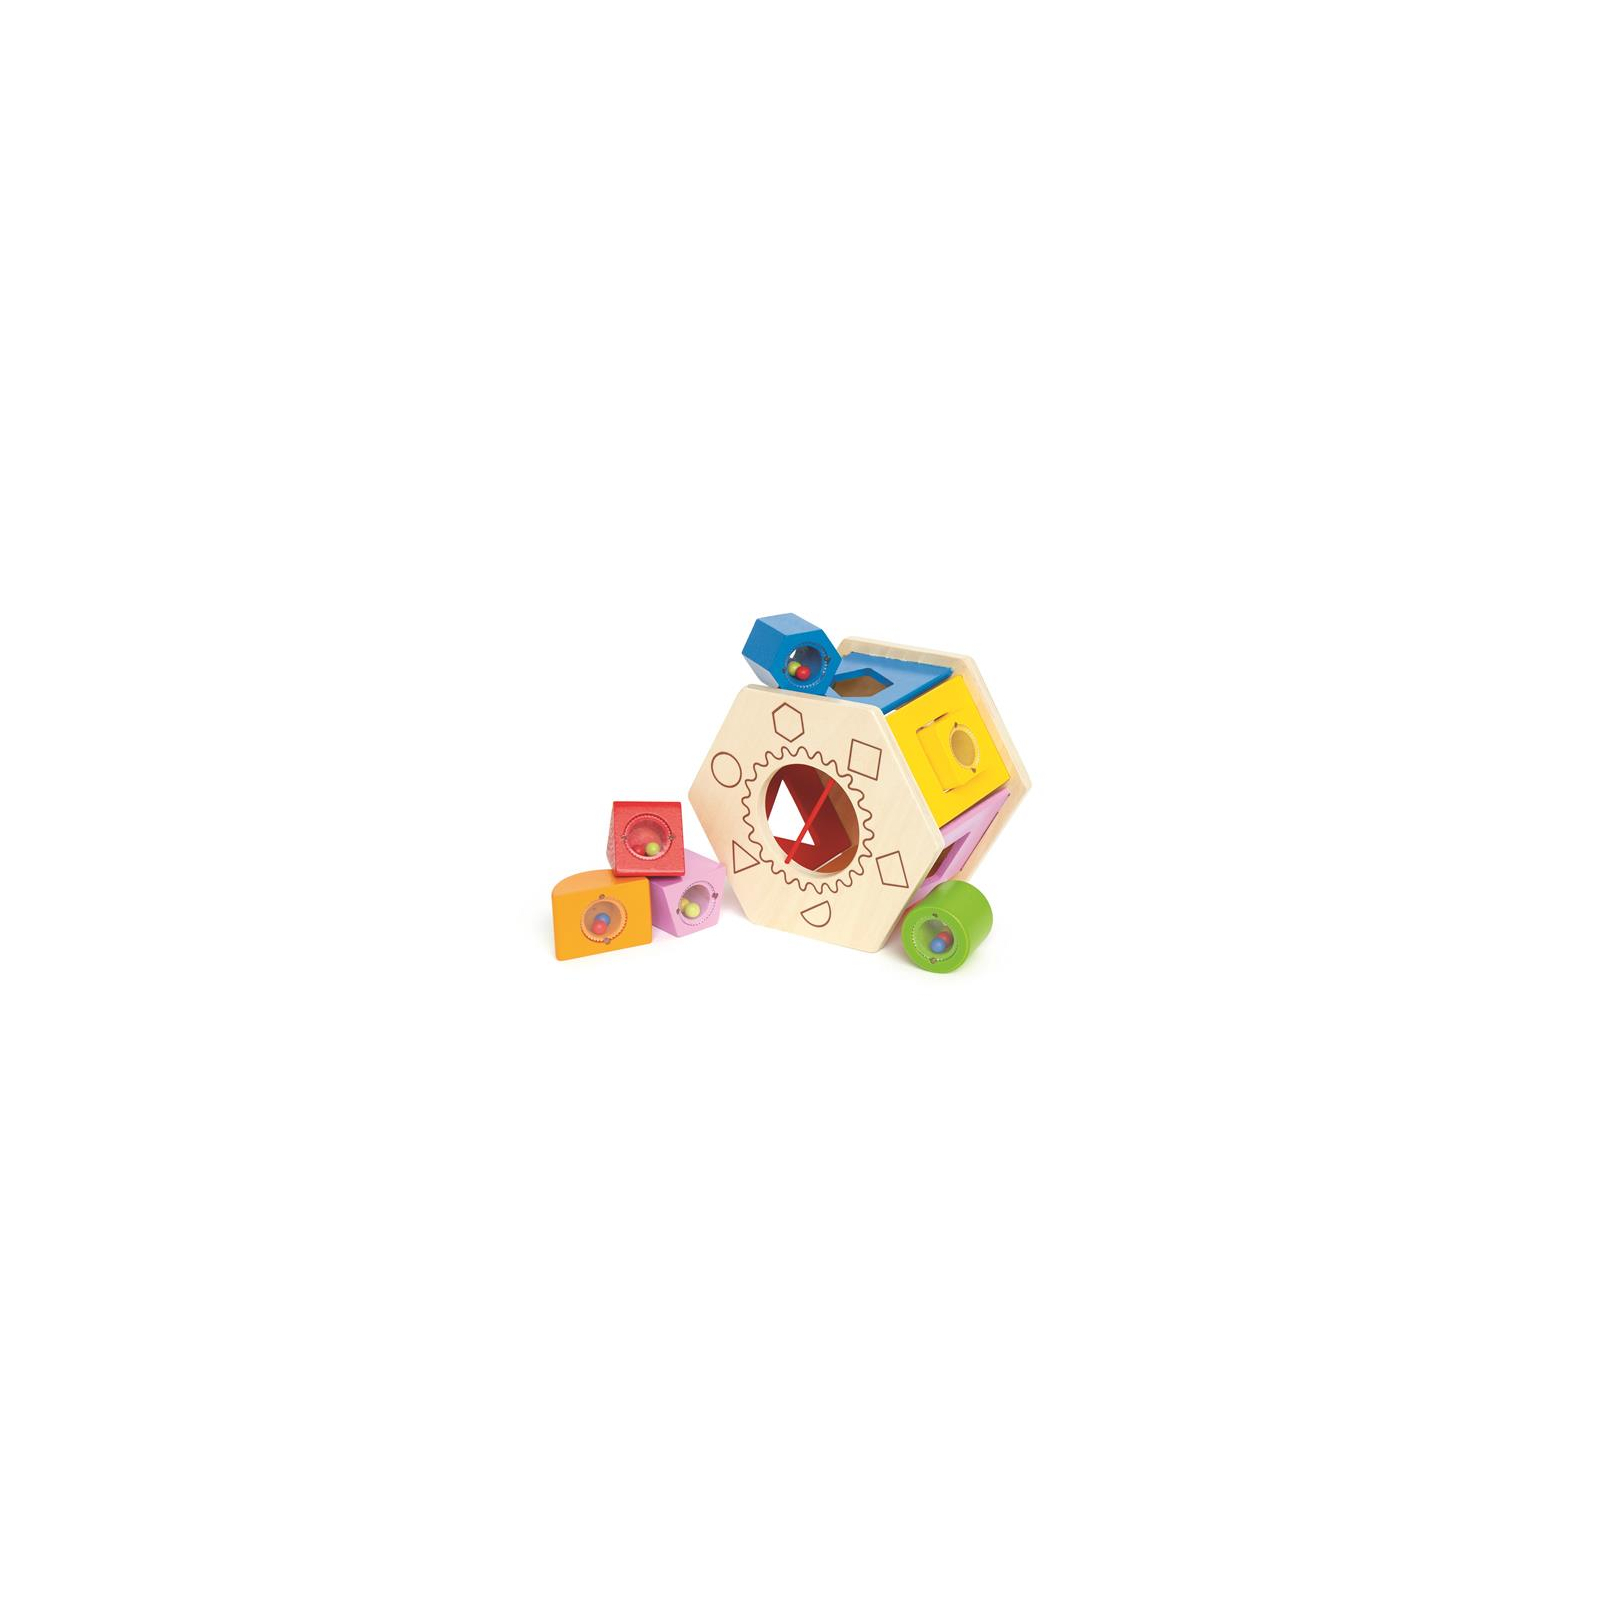 Розвиваюча іграшка Hape Сортер дерев'яний з брязкальцями (E0407)